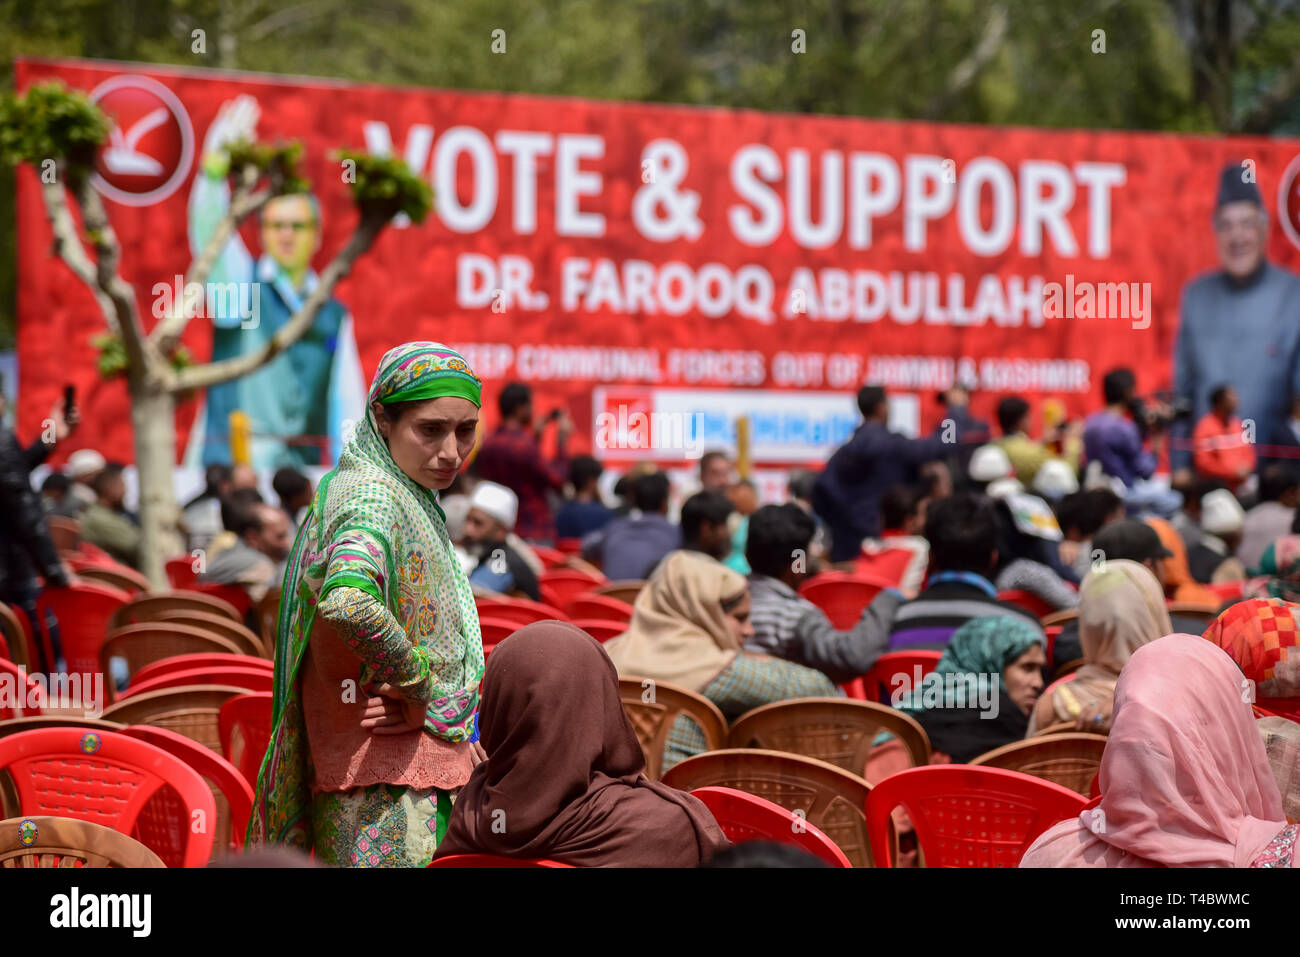 Les partisans du parti politique de l'Inde conférence nationale sont vus assister à une réunion électorale à Srinagar. L'Inde est la tenue d'élections générales en sept phases, la première s'est tenue le 11 avril. Banque D'Images